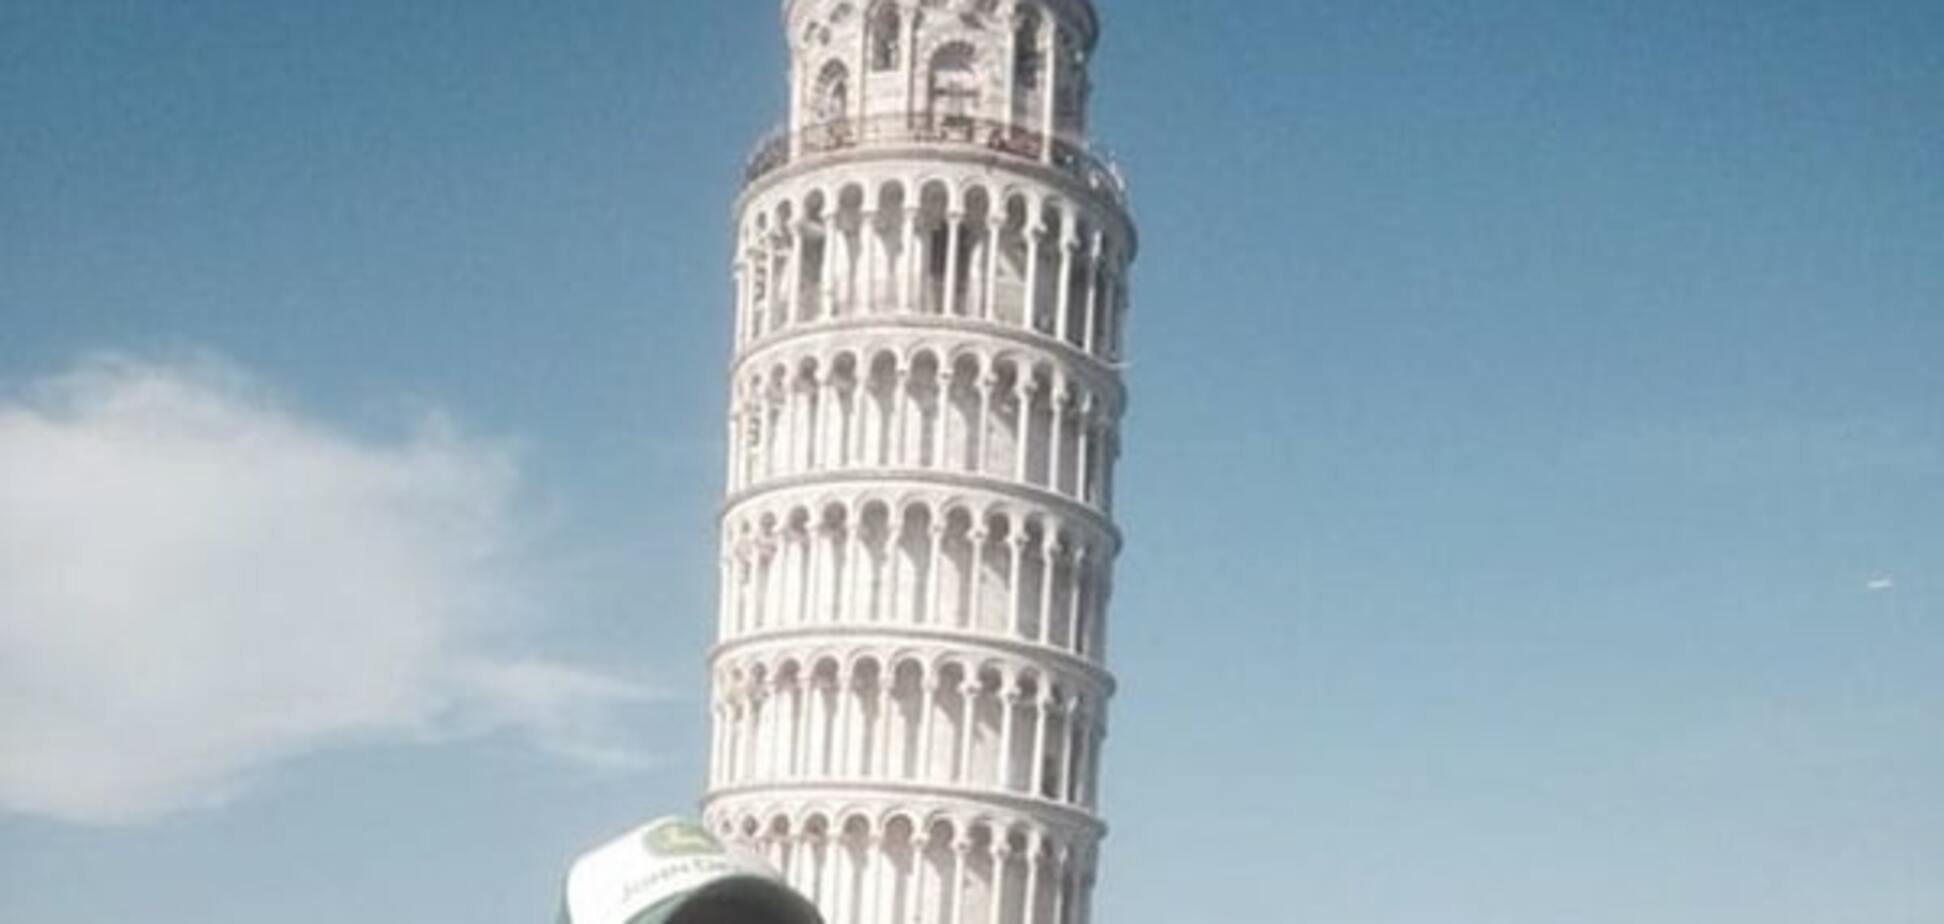 Тревел-троллинг: парень высмеял 'баянистые' фото туристов с Пизанской башней